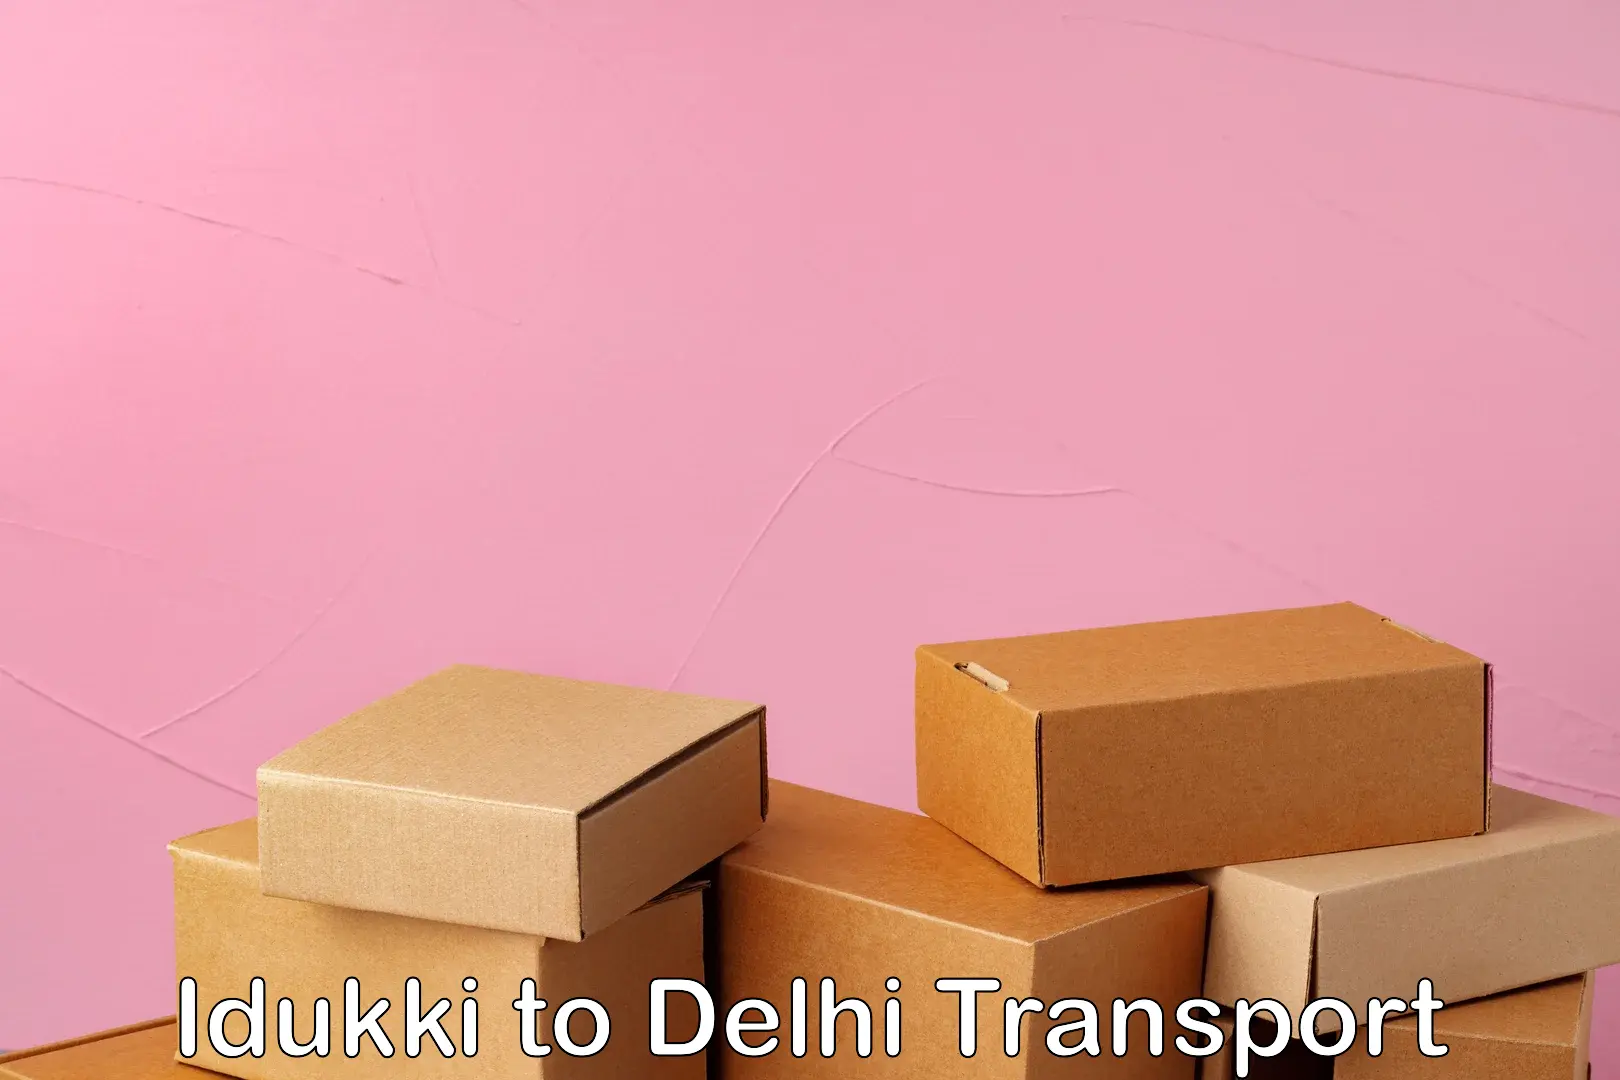 Cargo train transport services Idukki to Delhi